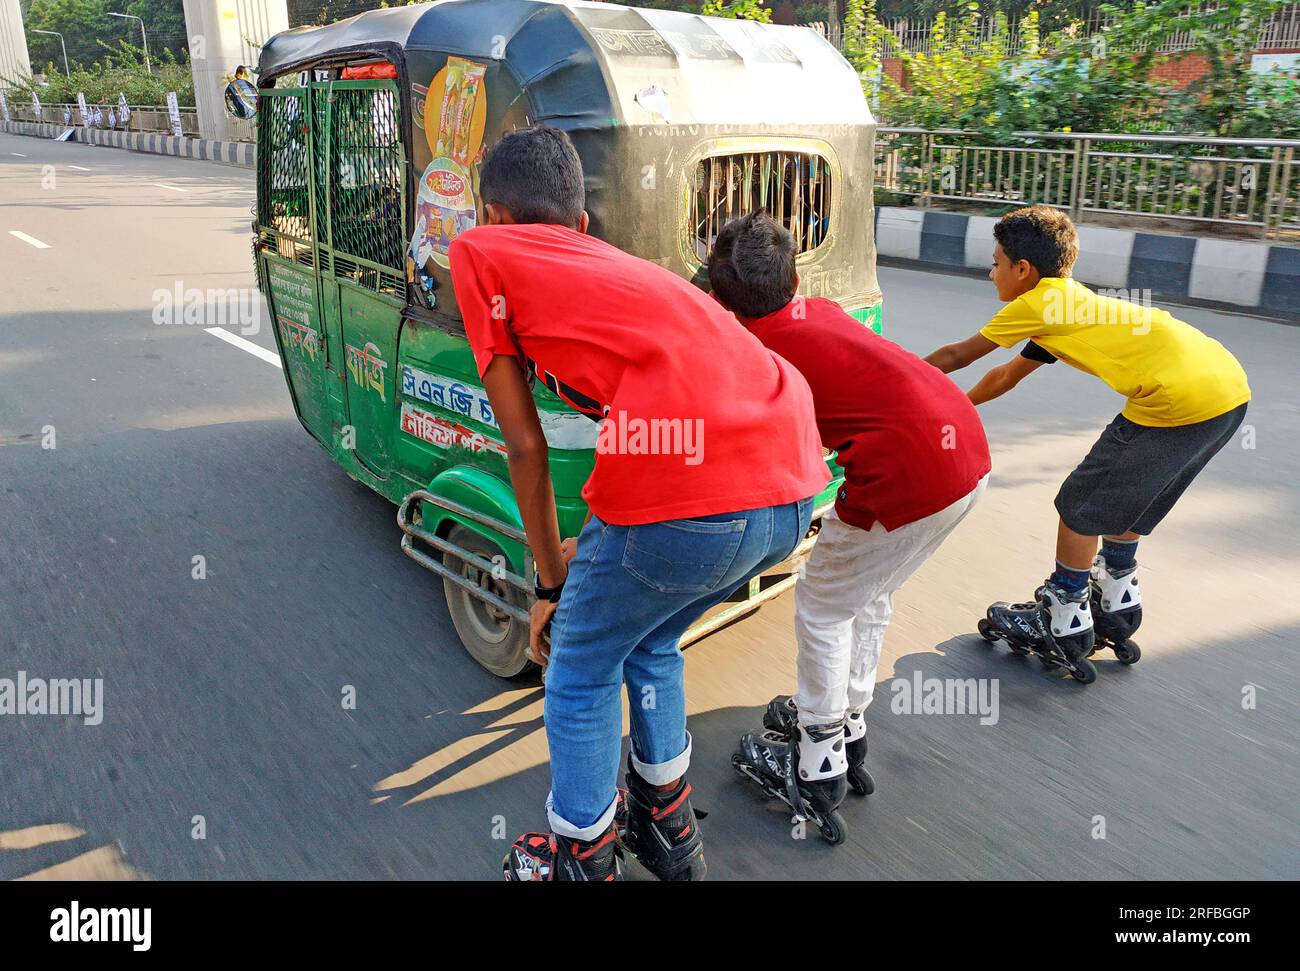 Giorno dopo giorno il pattinaggio a rotelle è diventato popolare tra gli adolescenti, a causa della mancanza di spazio adeguato per esercitarsi, gli adolescenti rischiano la vita sulla trafficata st Foto Stock